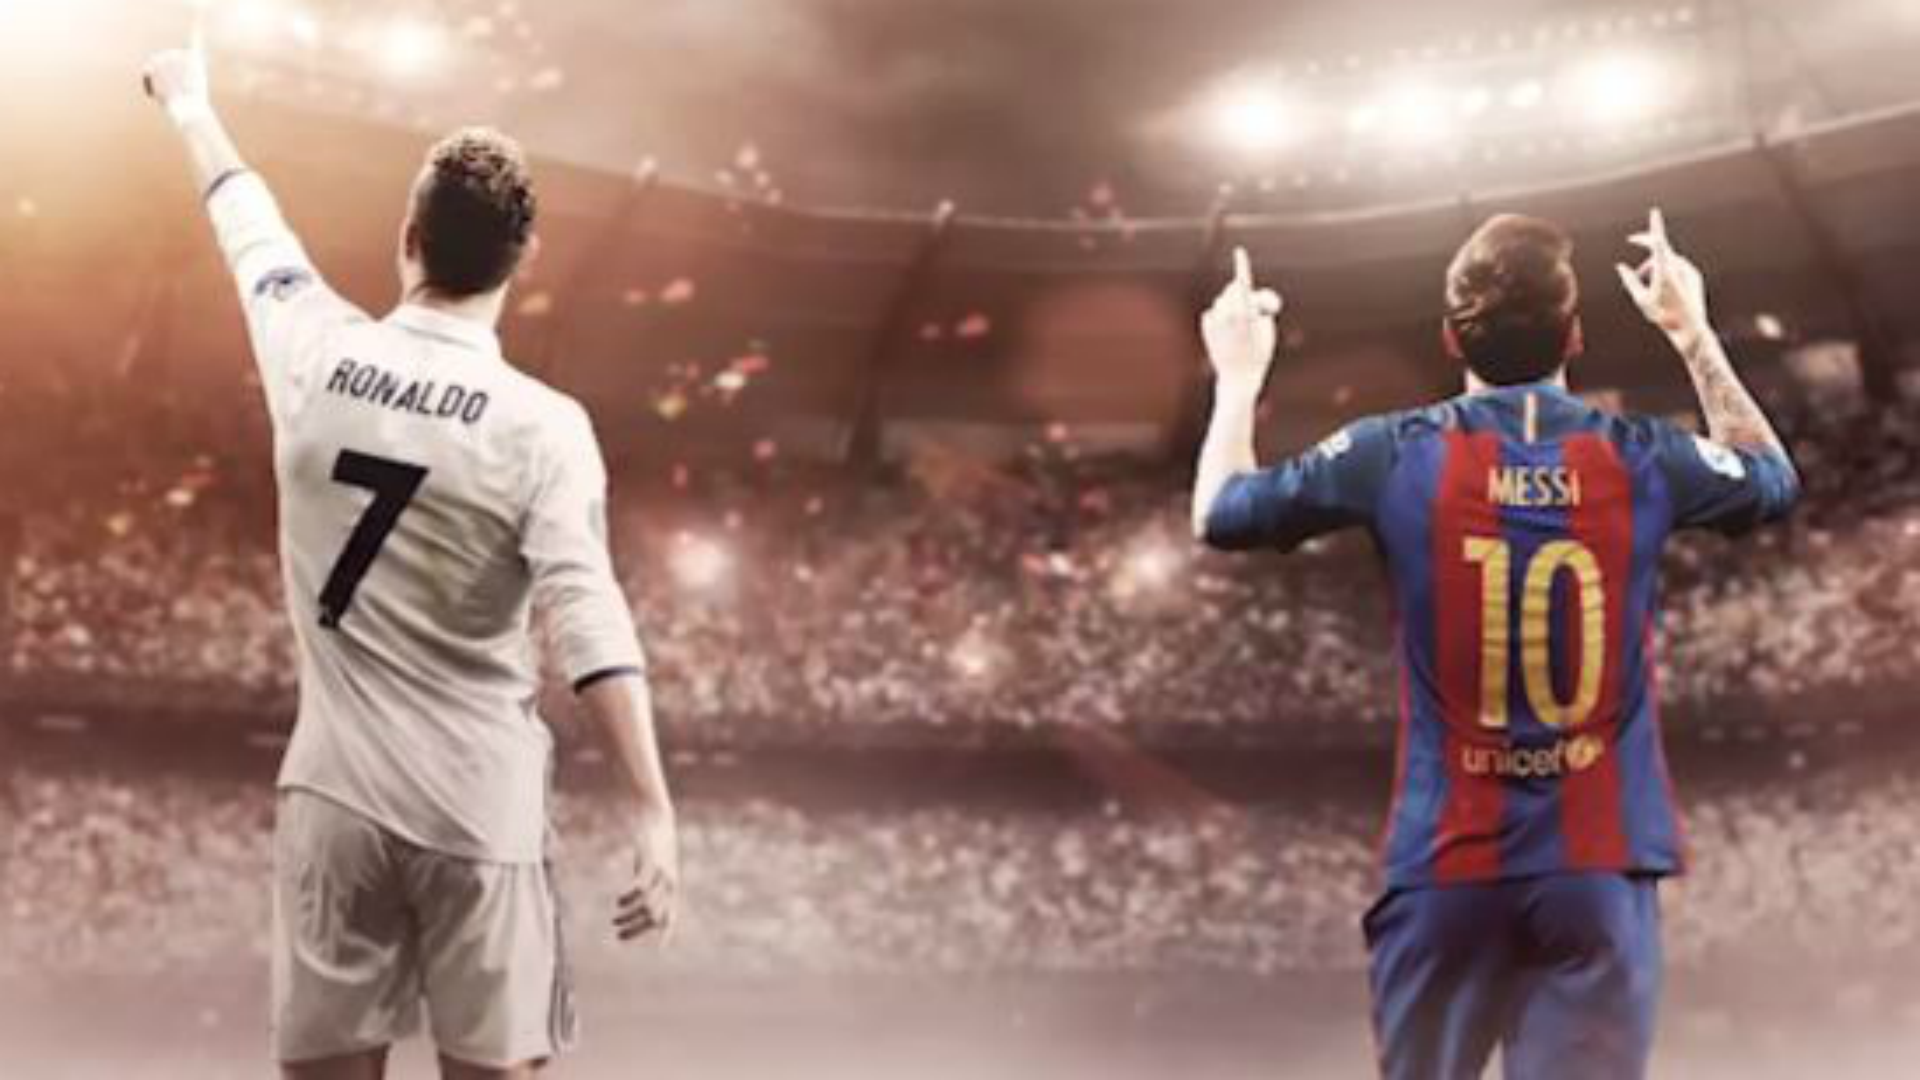 Messi và Ronaldo - Sự so sánh giữa hai huyền thoại bóng đá là điều mà các fan hâm mộ không thể bỏ qua. Hãy xem hình ảnh này để được chiêm ngưỡng sự khác biệt giữa Messi và Ronaldo trên sân cỏ.